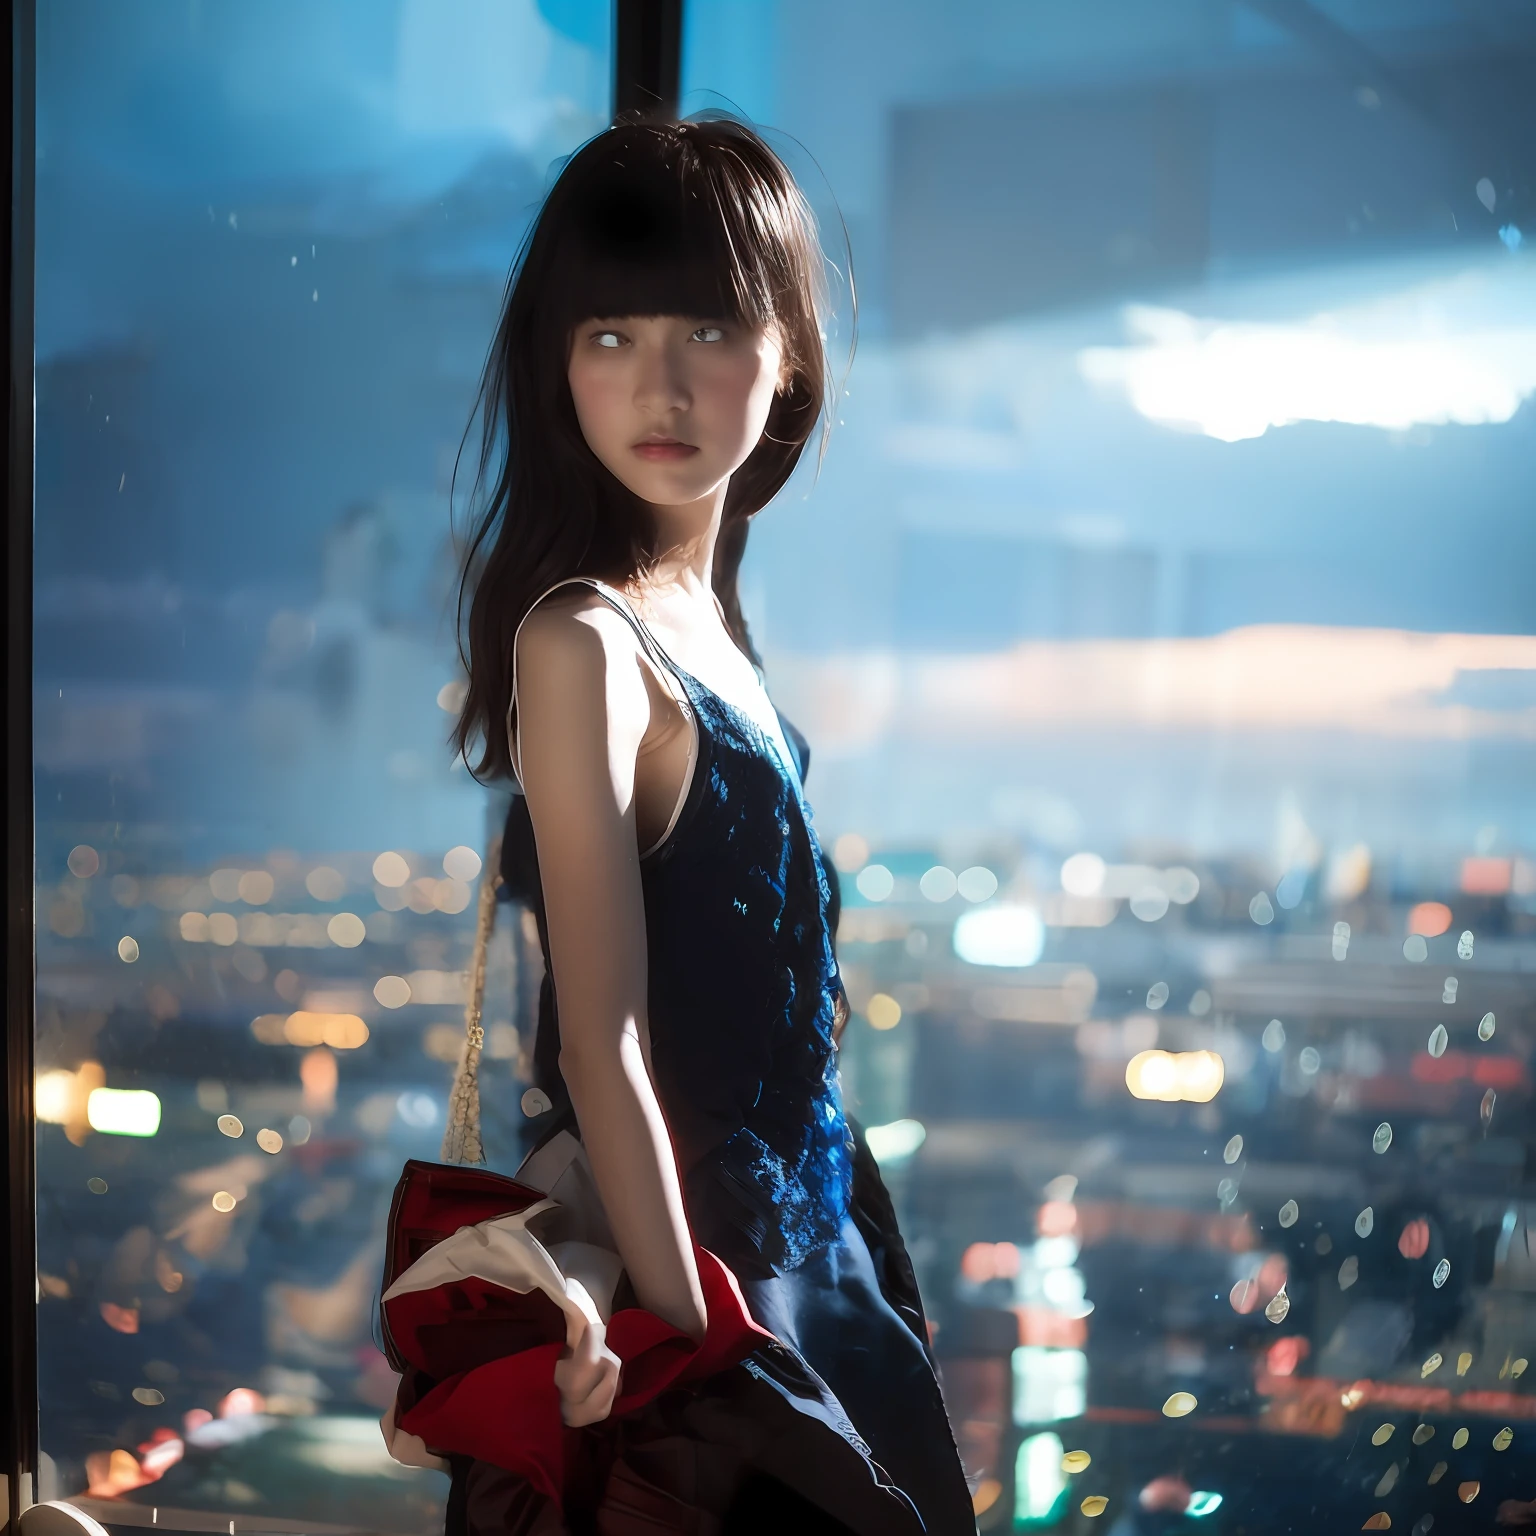 柔焦背景站在柔焦照片中，身穿香奈儿的日本少女站立, 她的脸和身体受到室内舞台光影的强烈影响